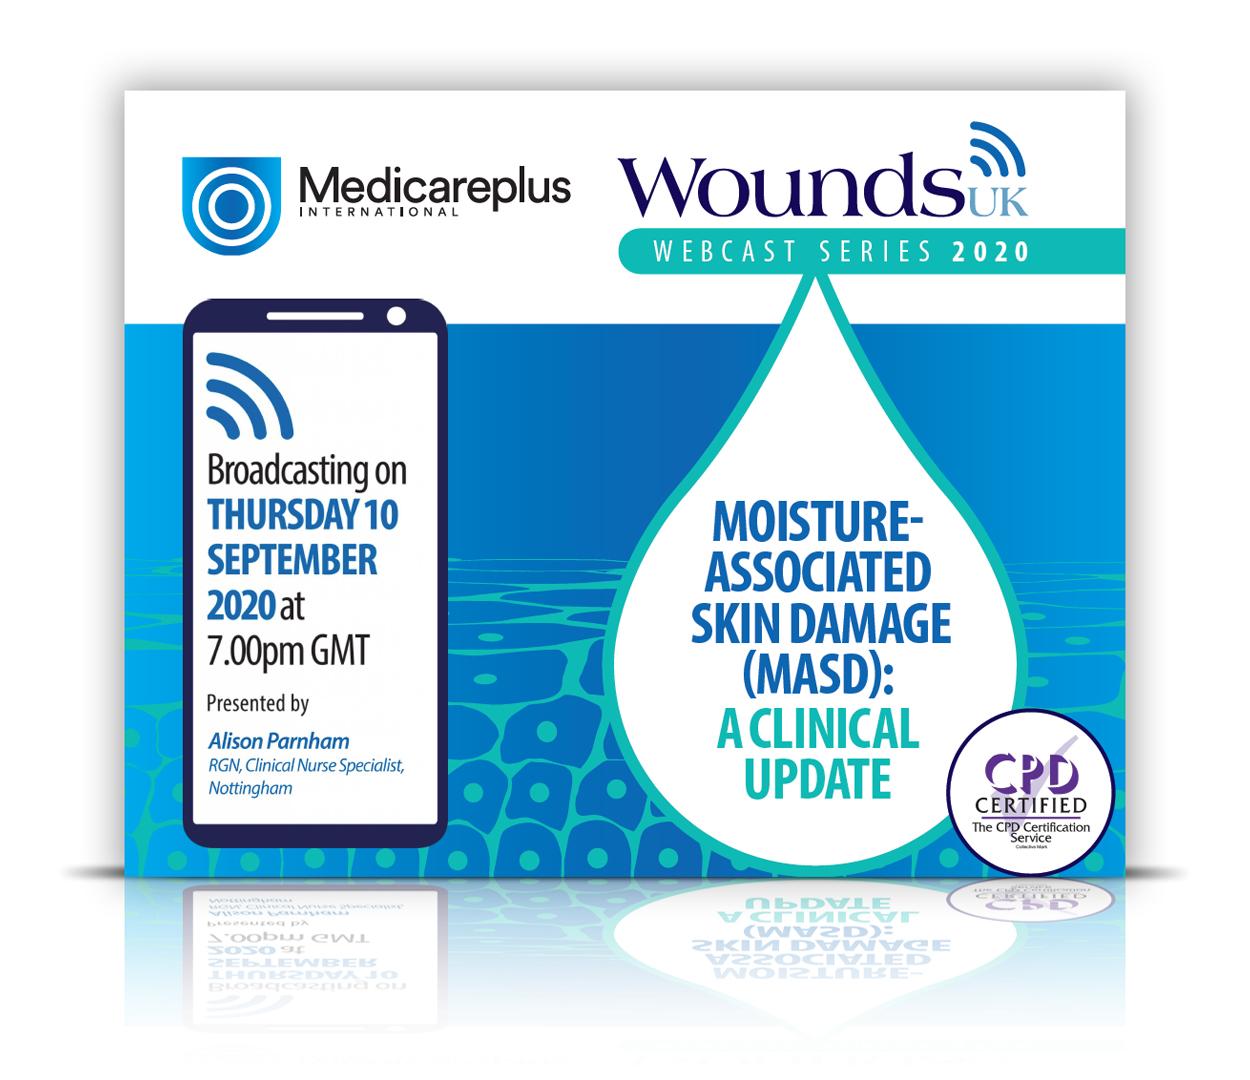 Moisture-Associated Skin Damage (MASD): A clinical update